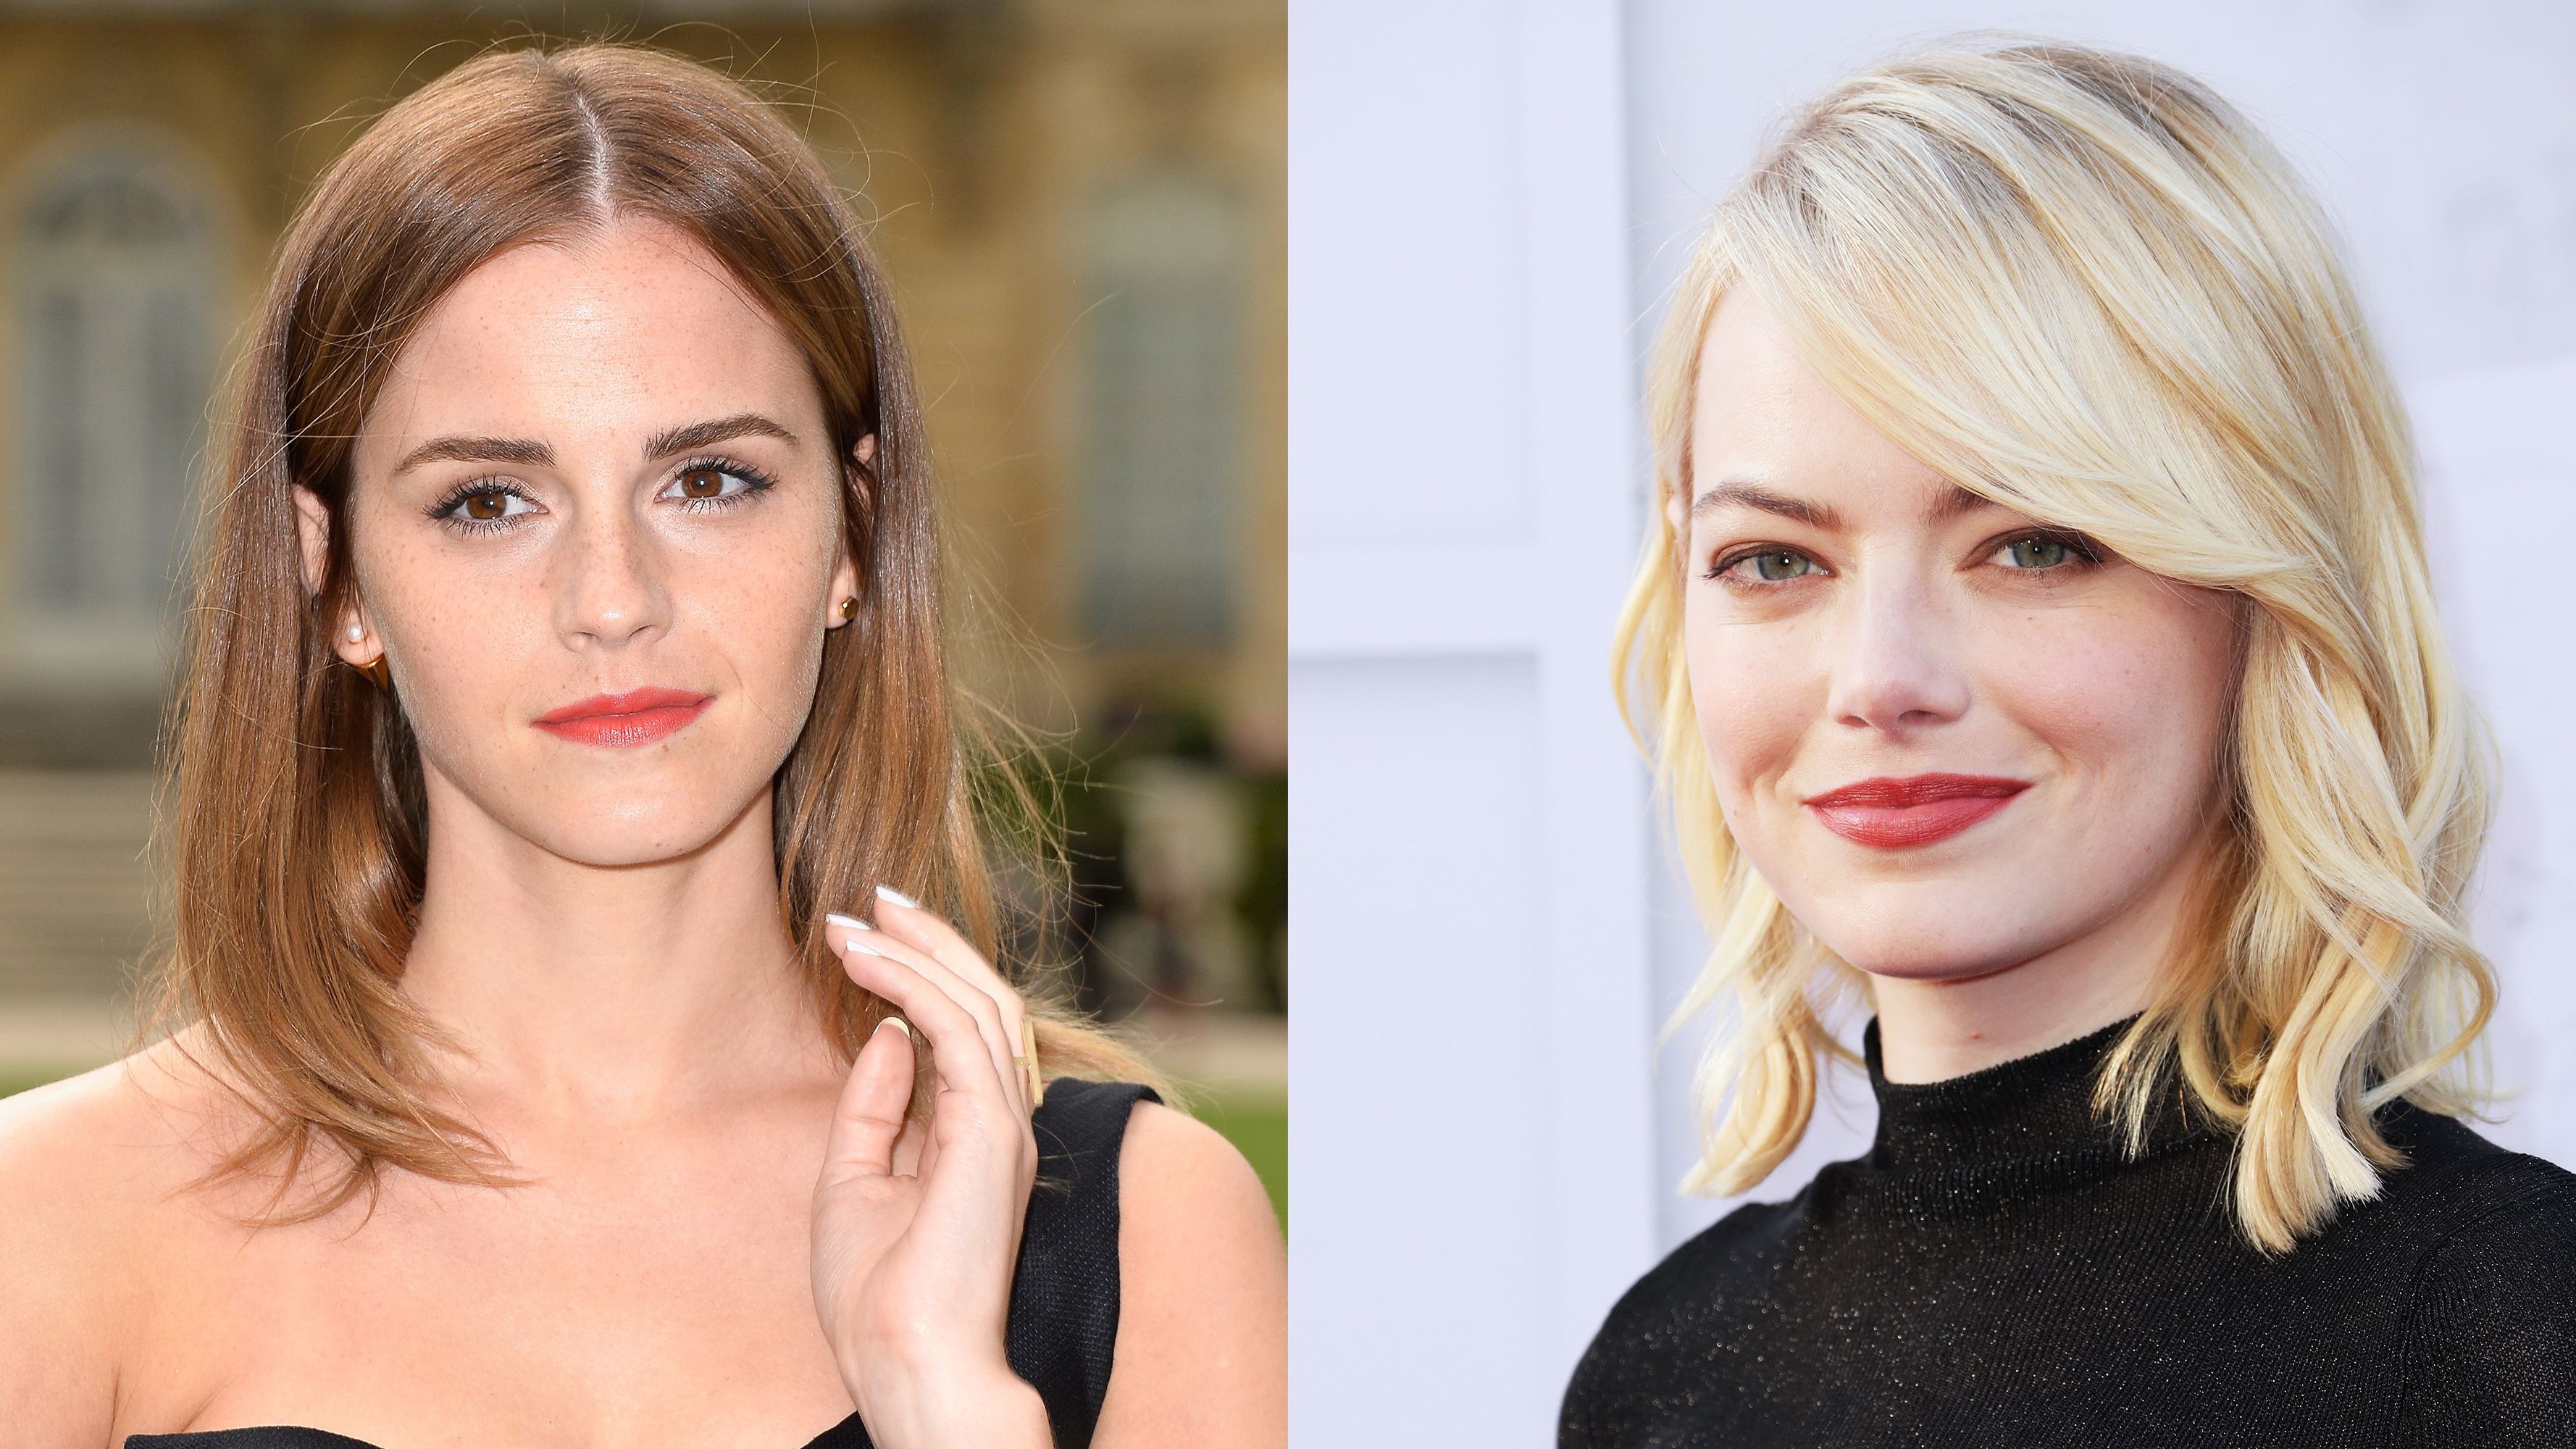 Hd Porn Emma Watson - Emma Watson Replacing Emma Stone in Greta Gerwig's 'Little Women' - Emma  Watson Joins 'Little Women' Cast | Marie Claire